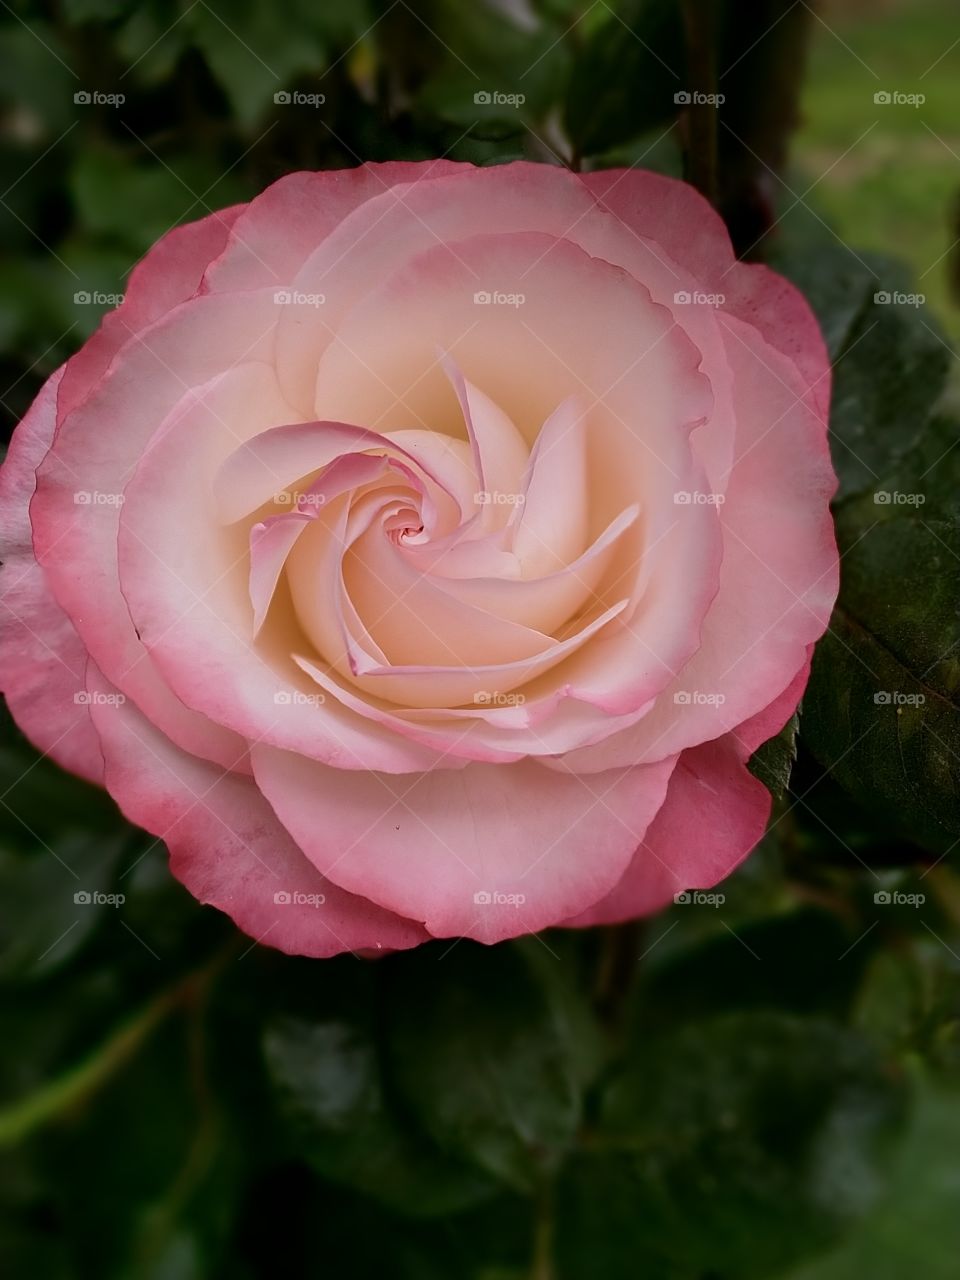 rose amazing!